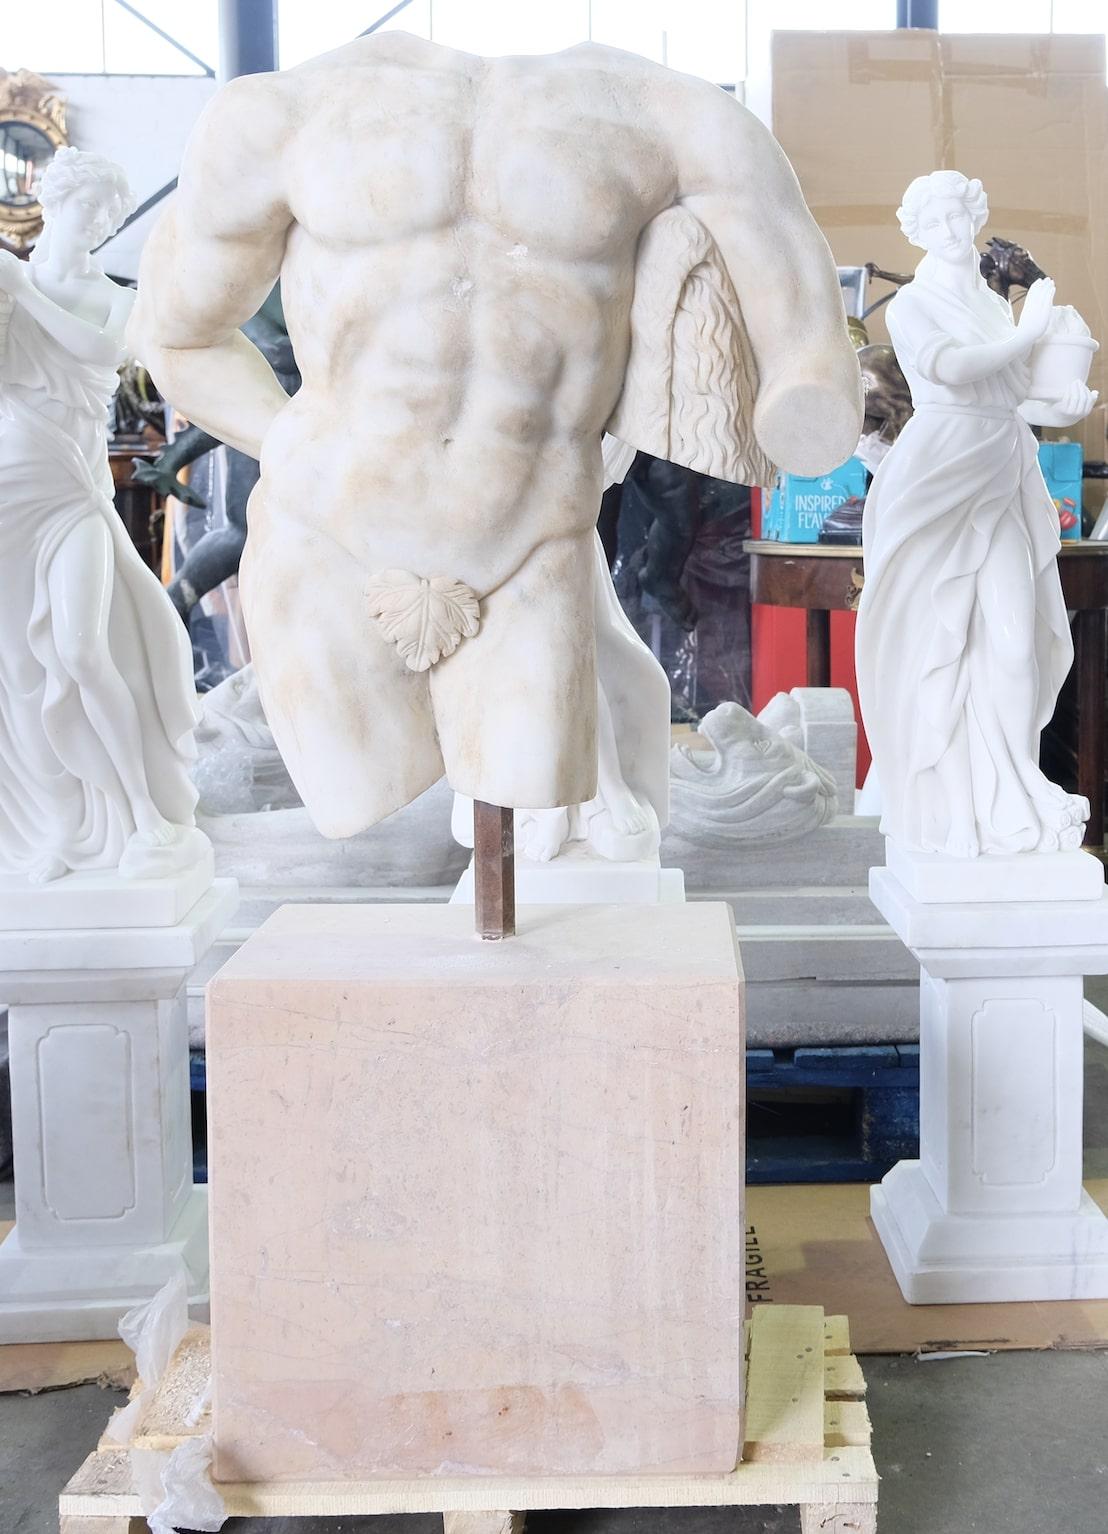 Un torse romain du 20ème siècle, sculpté à la main et de taille réelle. Le torse est sculpté dans du marbre statutaire altéré sur une base en travertin.

L'un des objets les plus remarquables exposés dans les Mary and Michael Jaharis Galleries of